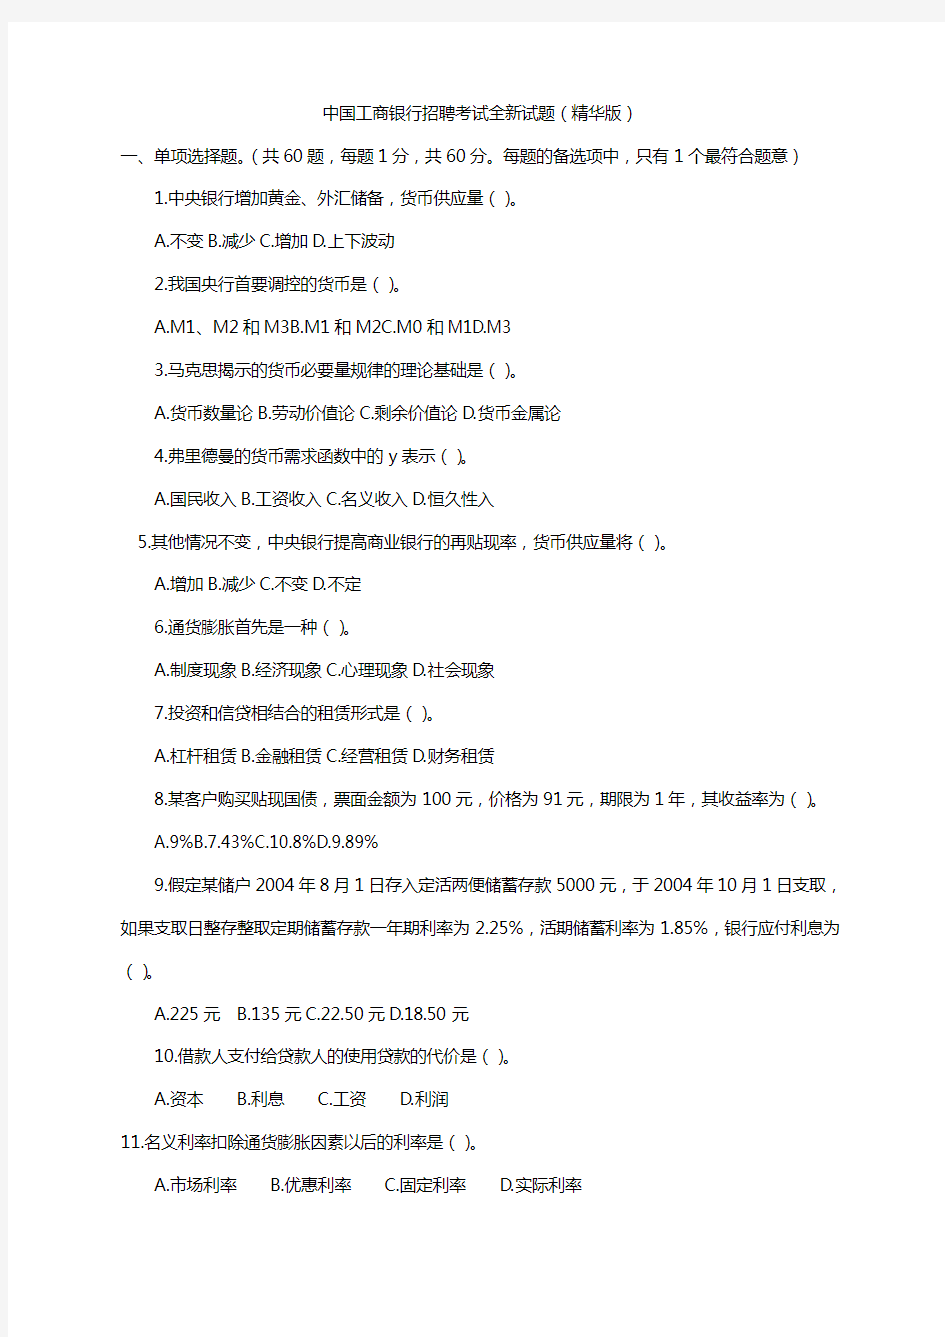 中国工商银行招聘考试试题(页完整版)